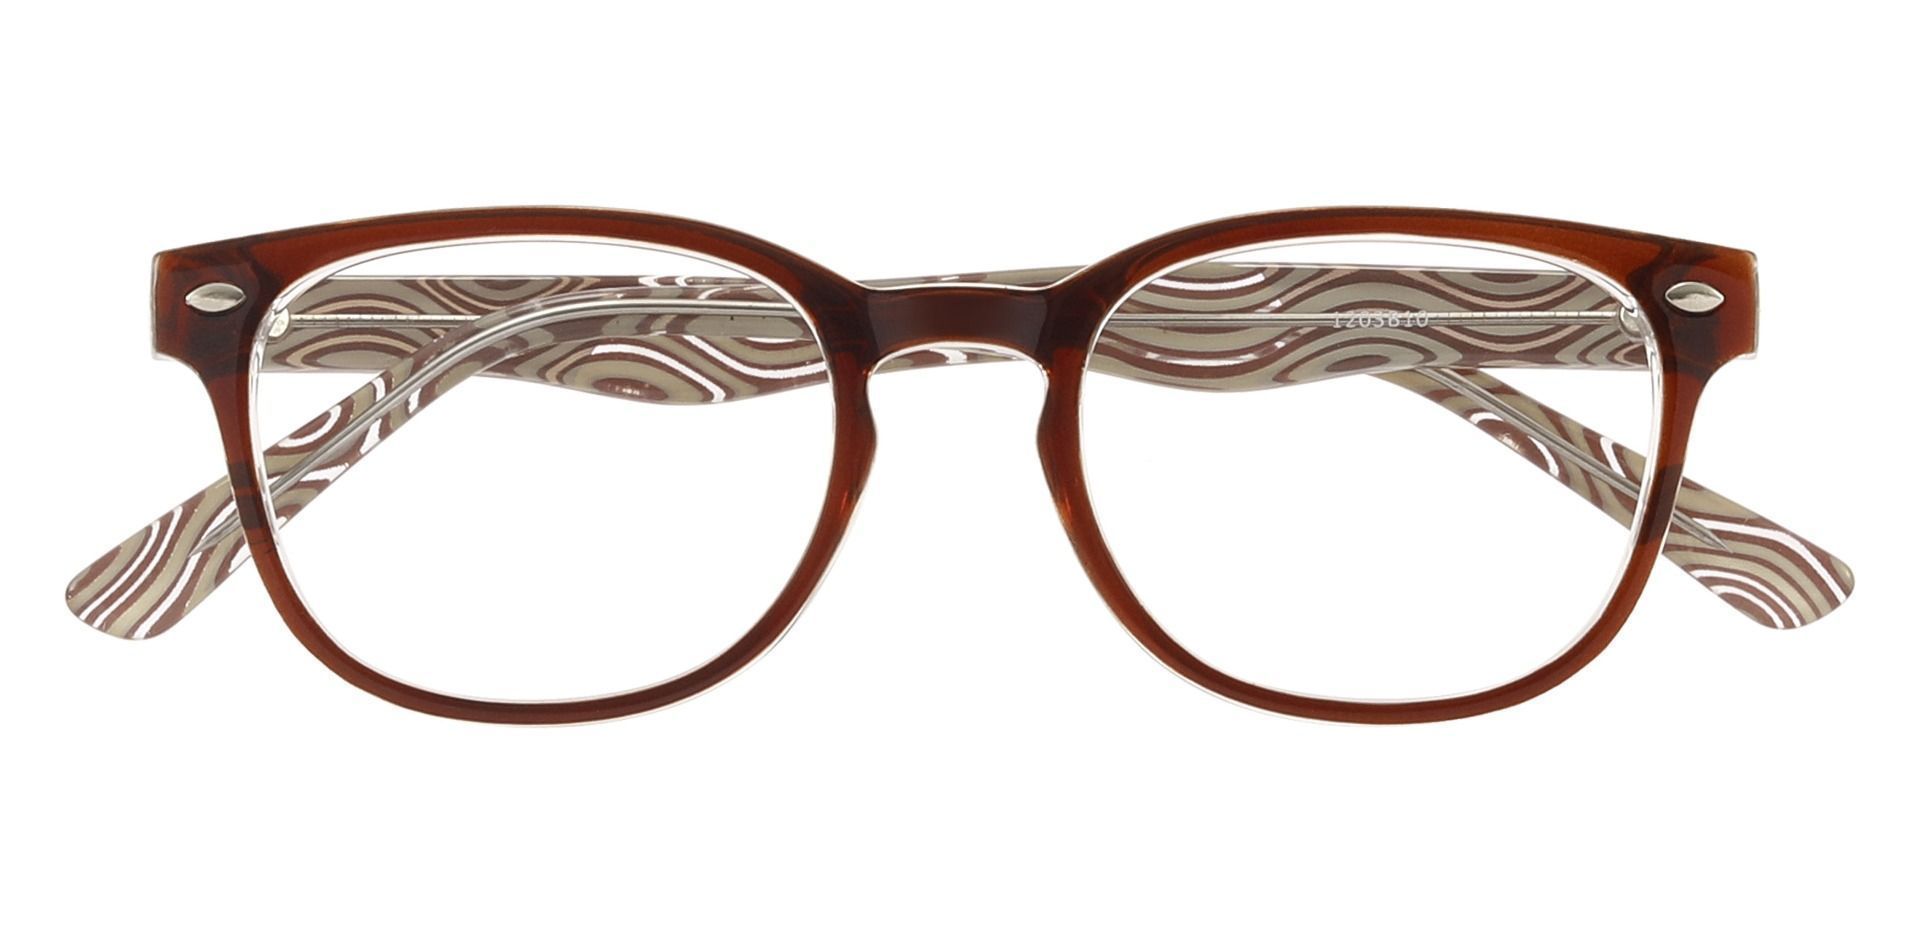 Swirl Classic Square Prescription Glasses - Brown